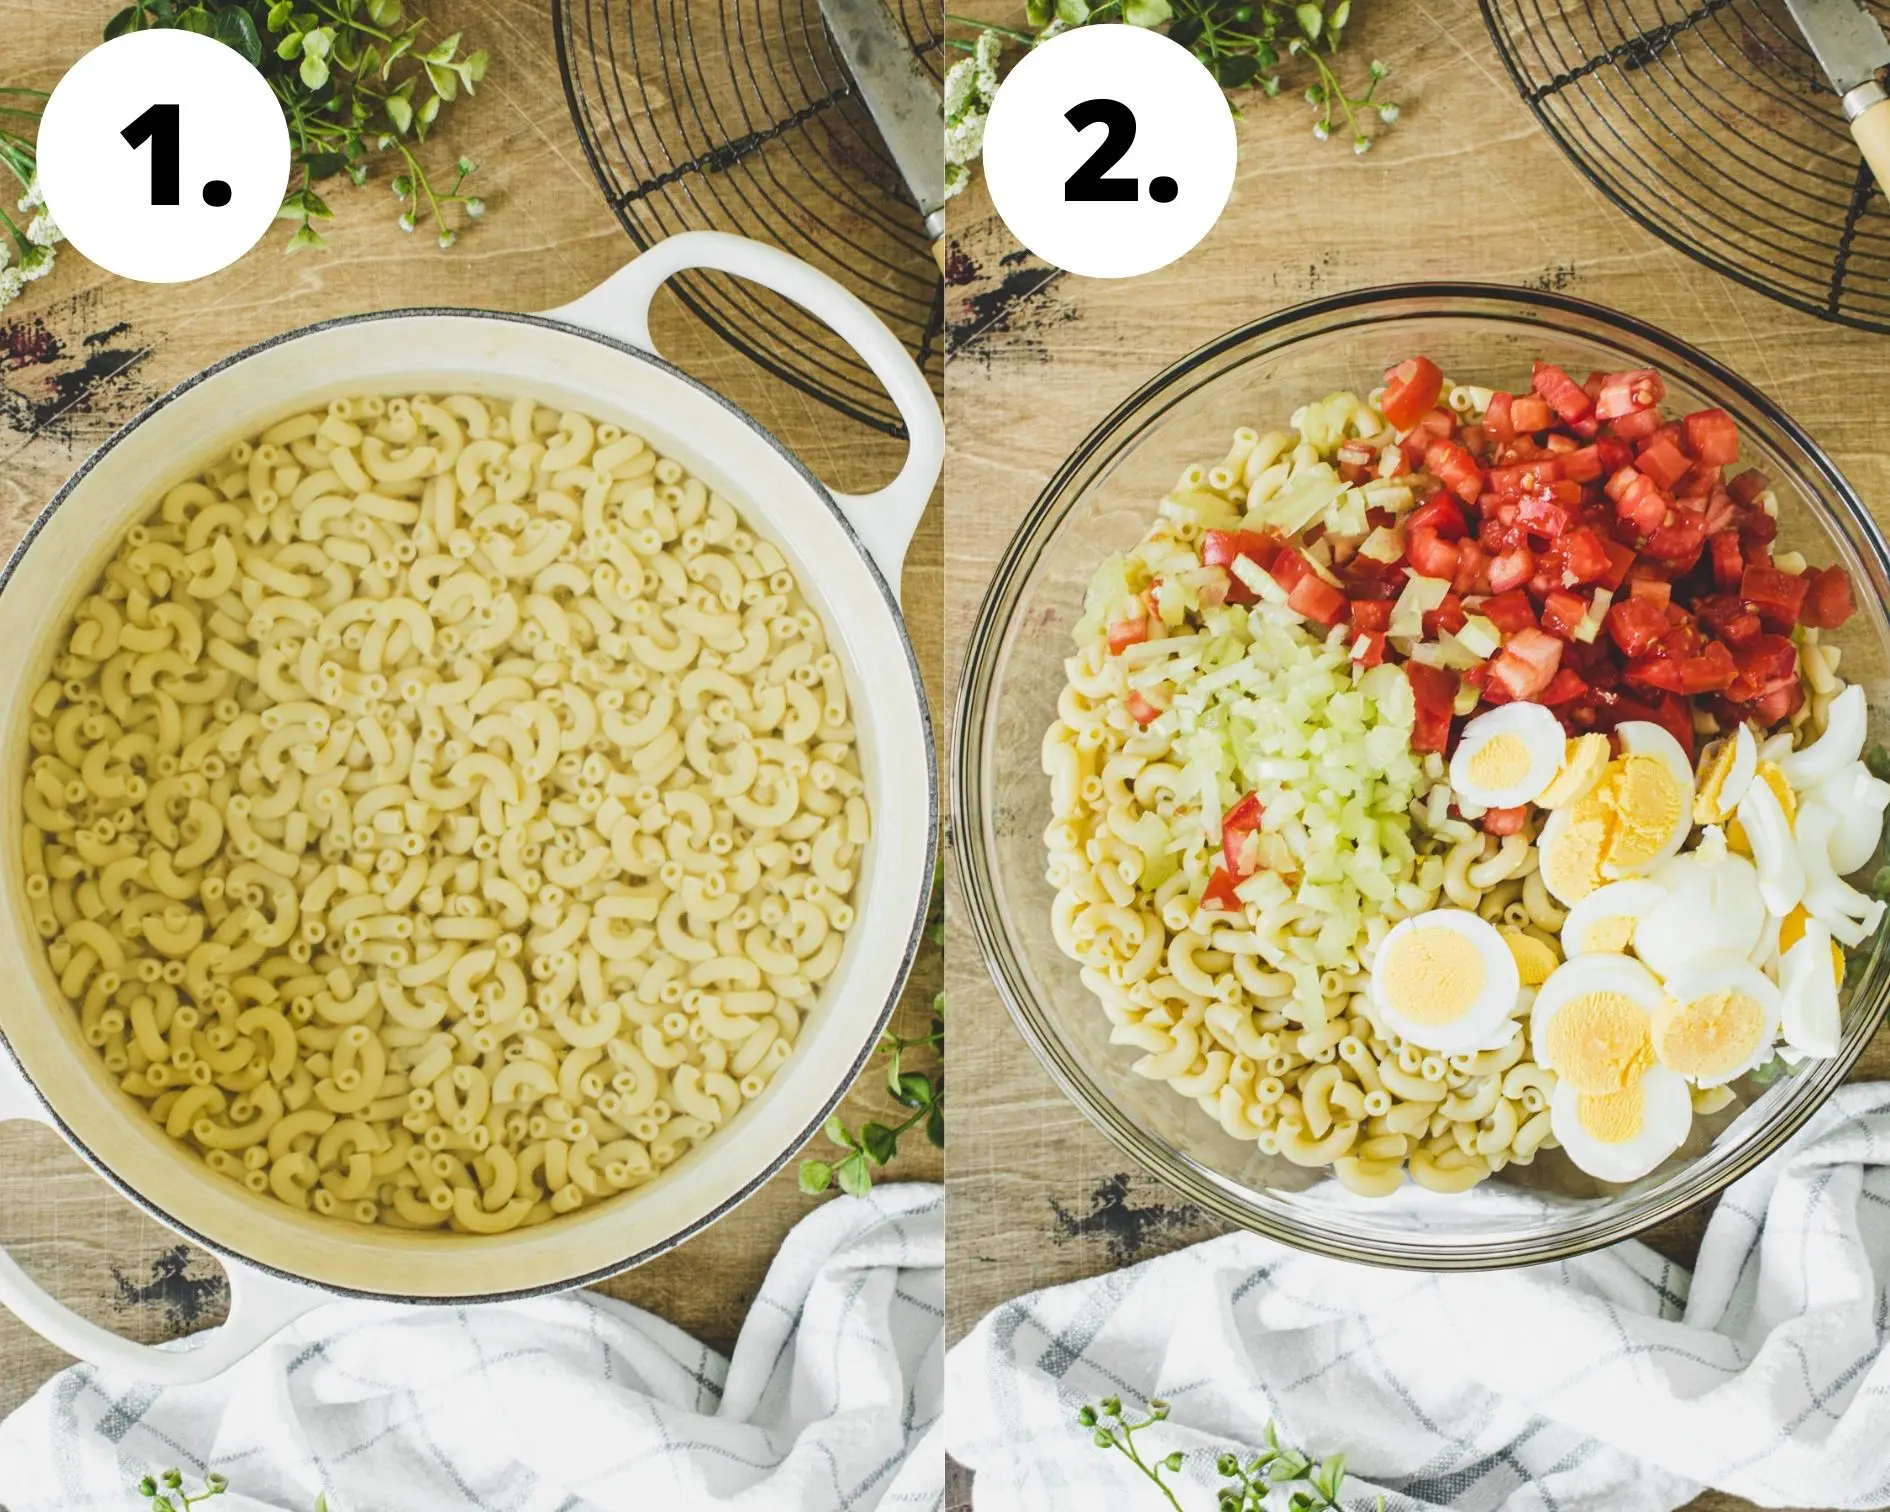 Southern macaroni salad process steps 1 and 2.